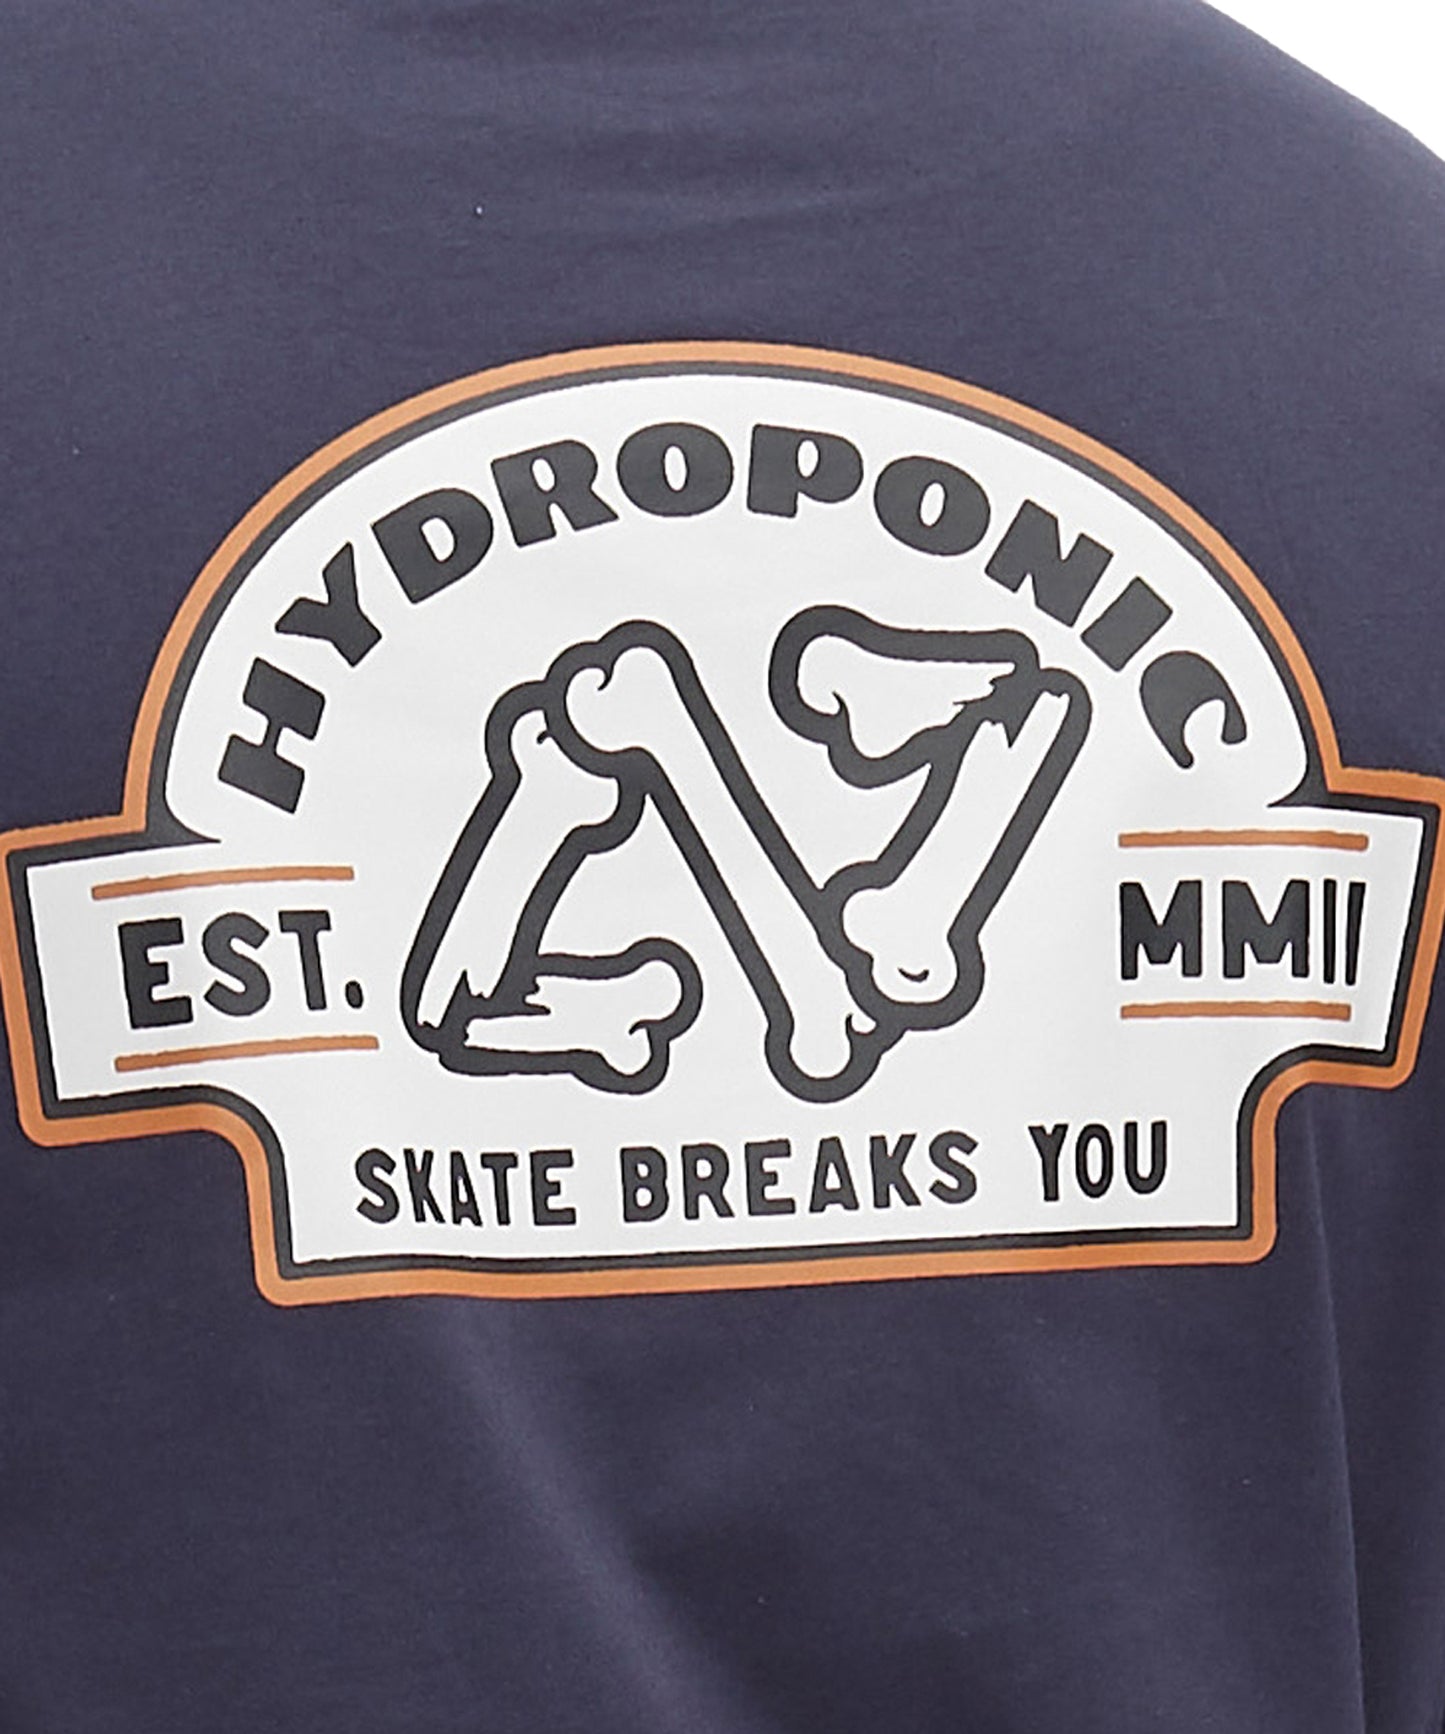 hydroponic-camiseta-para niños-manga-larga-color-azul-pequeño logo-hydroponic-en -el-pecho.